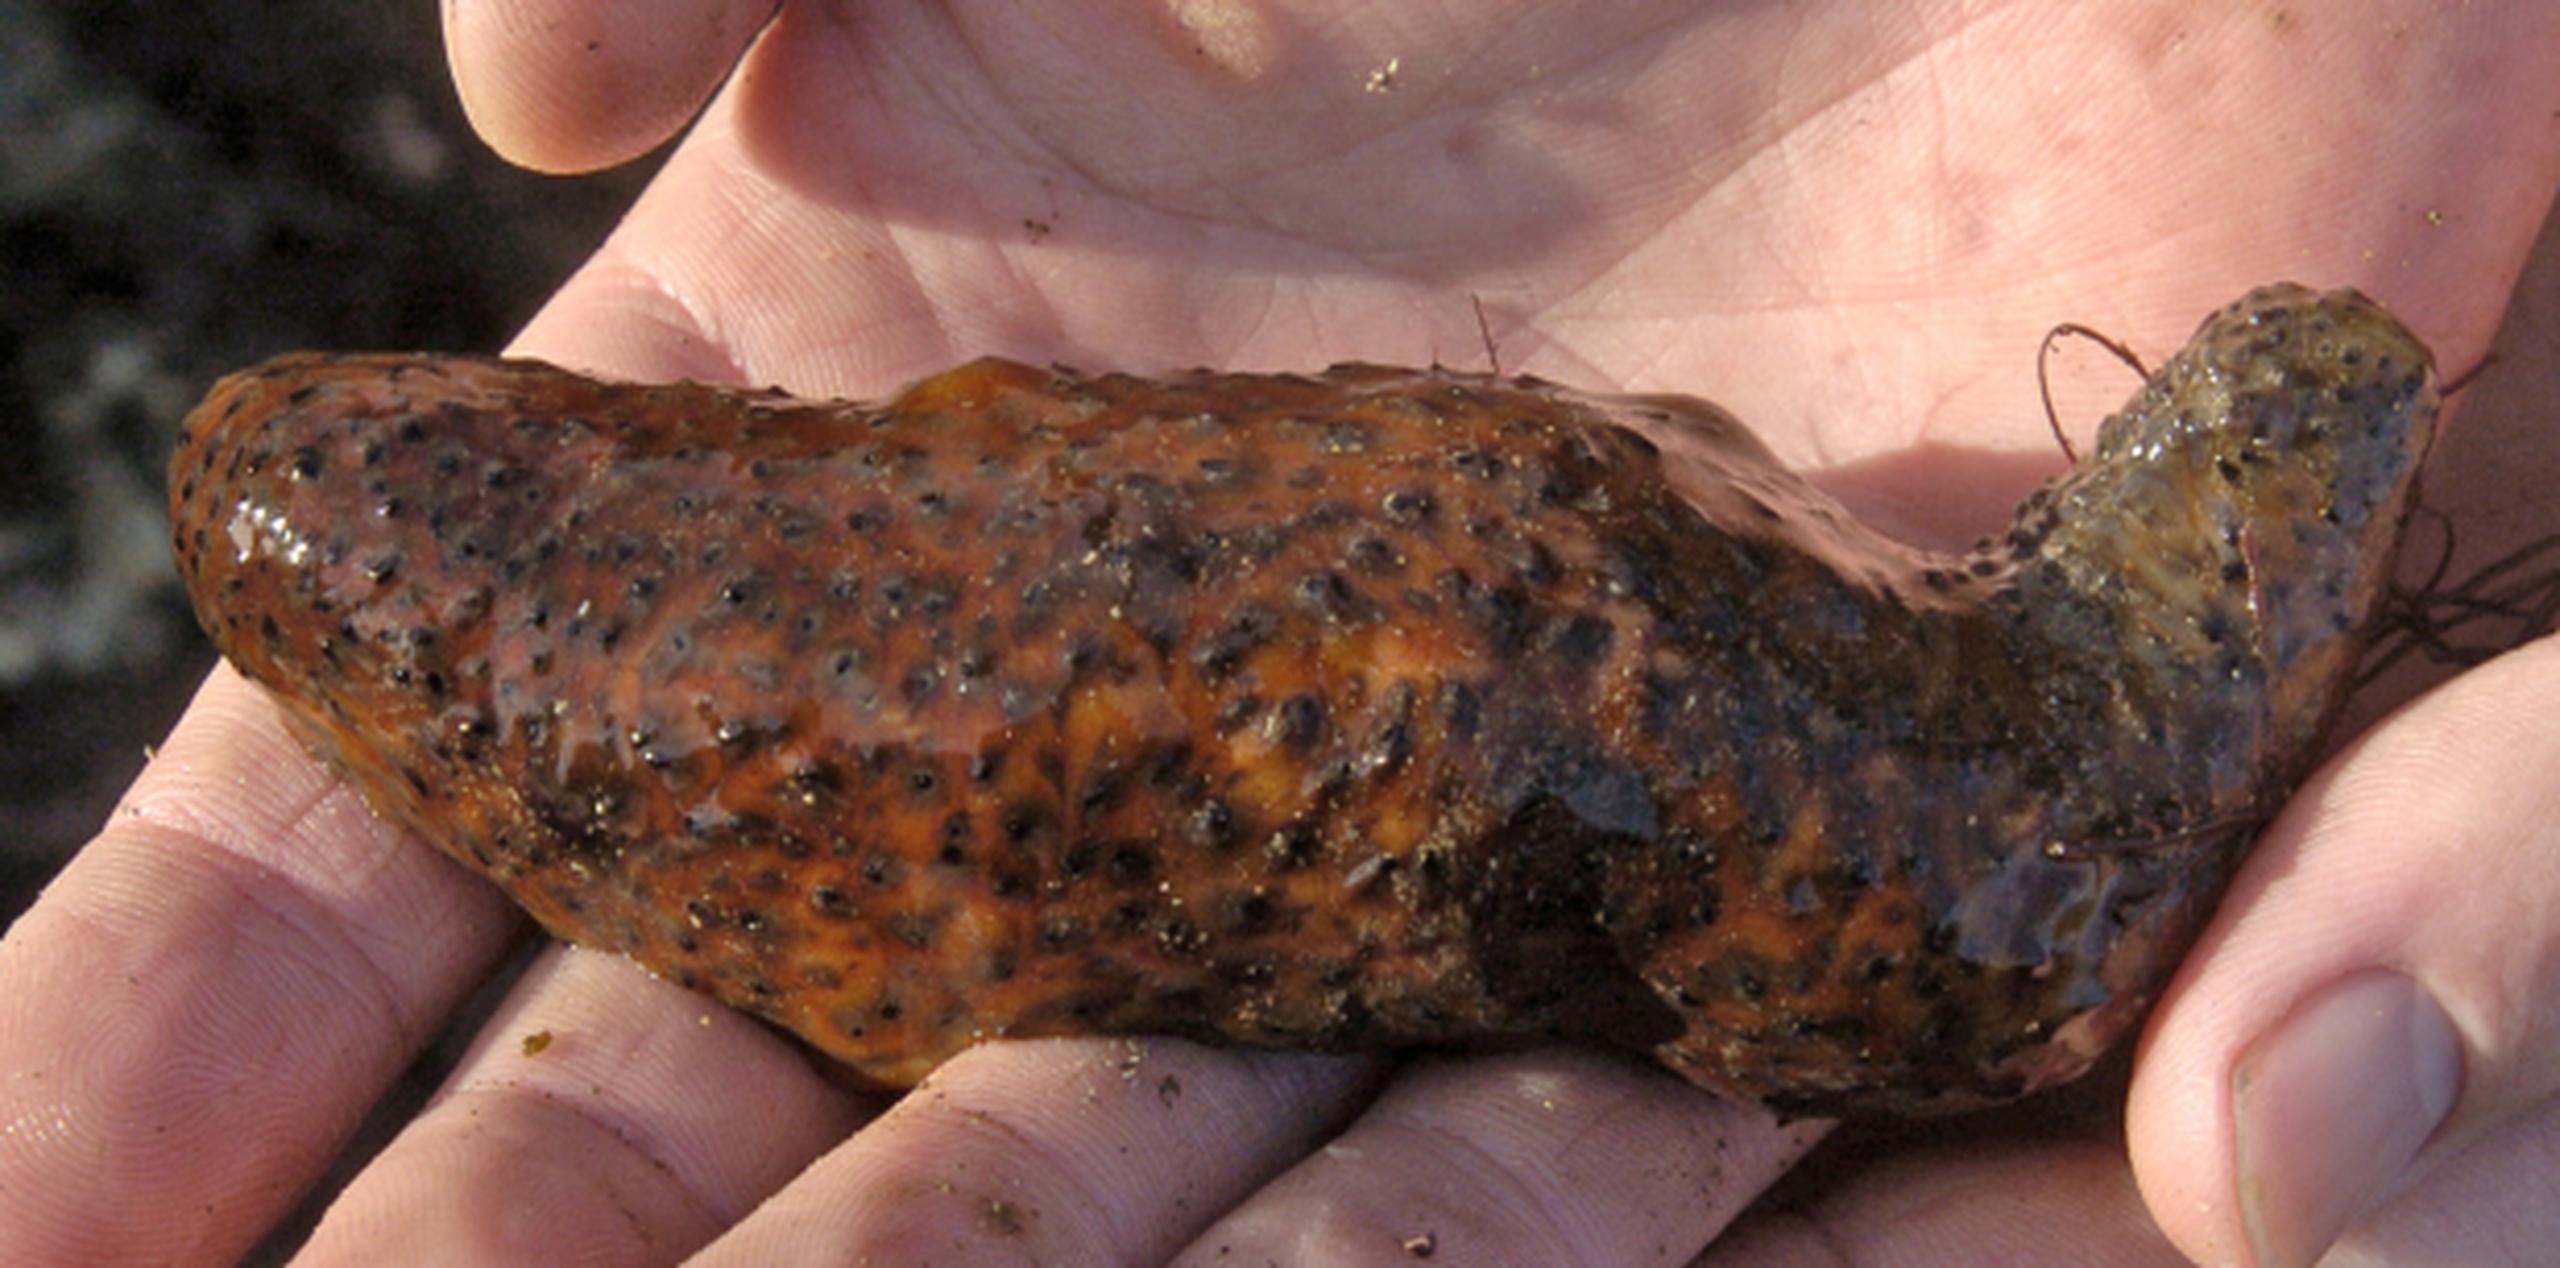 En Asia los pepinos de mar son considerados un manjar, de valor medicinal y afrodisiacos. (AP)